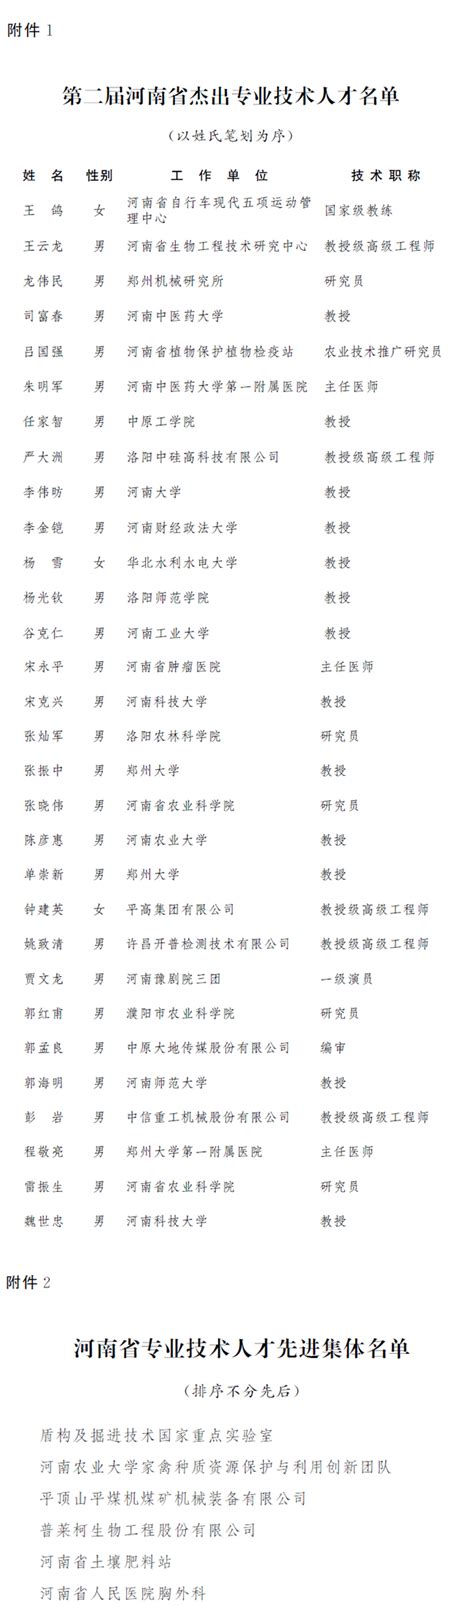 政协第十三届河南省委员会各专门委员会主任、副主任名单-大河新闻